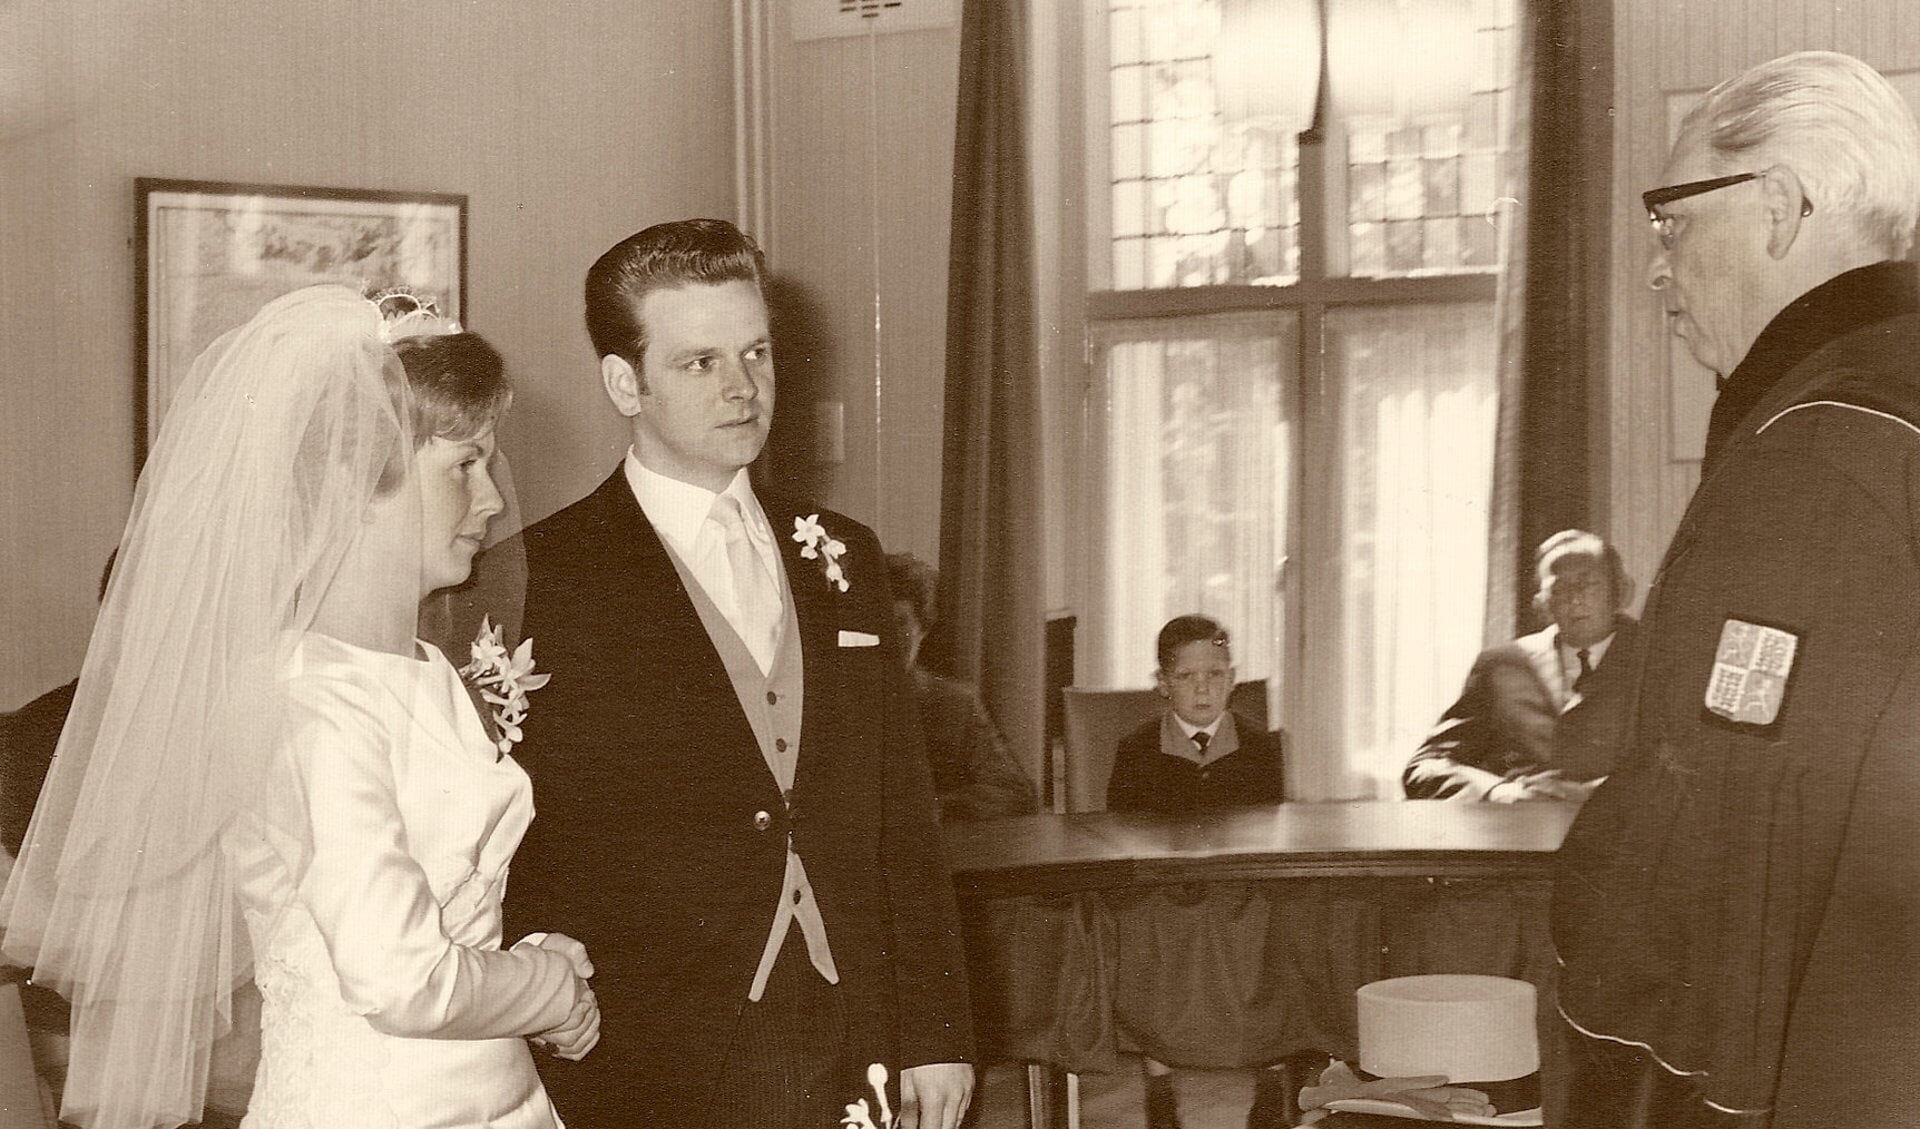 Riekie Dam en Piet Willemse trouwden op 16 mei 1967, de dag waarop Oud-Castricum werd opgericht